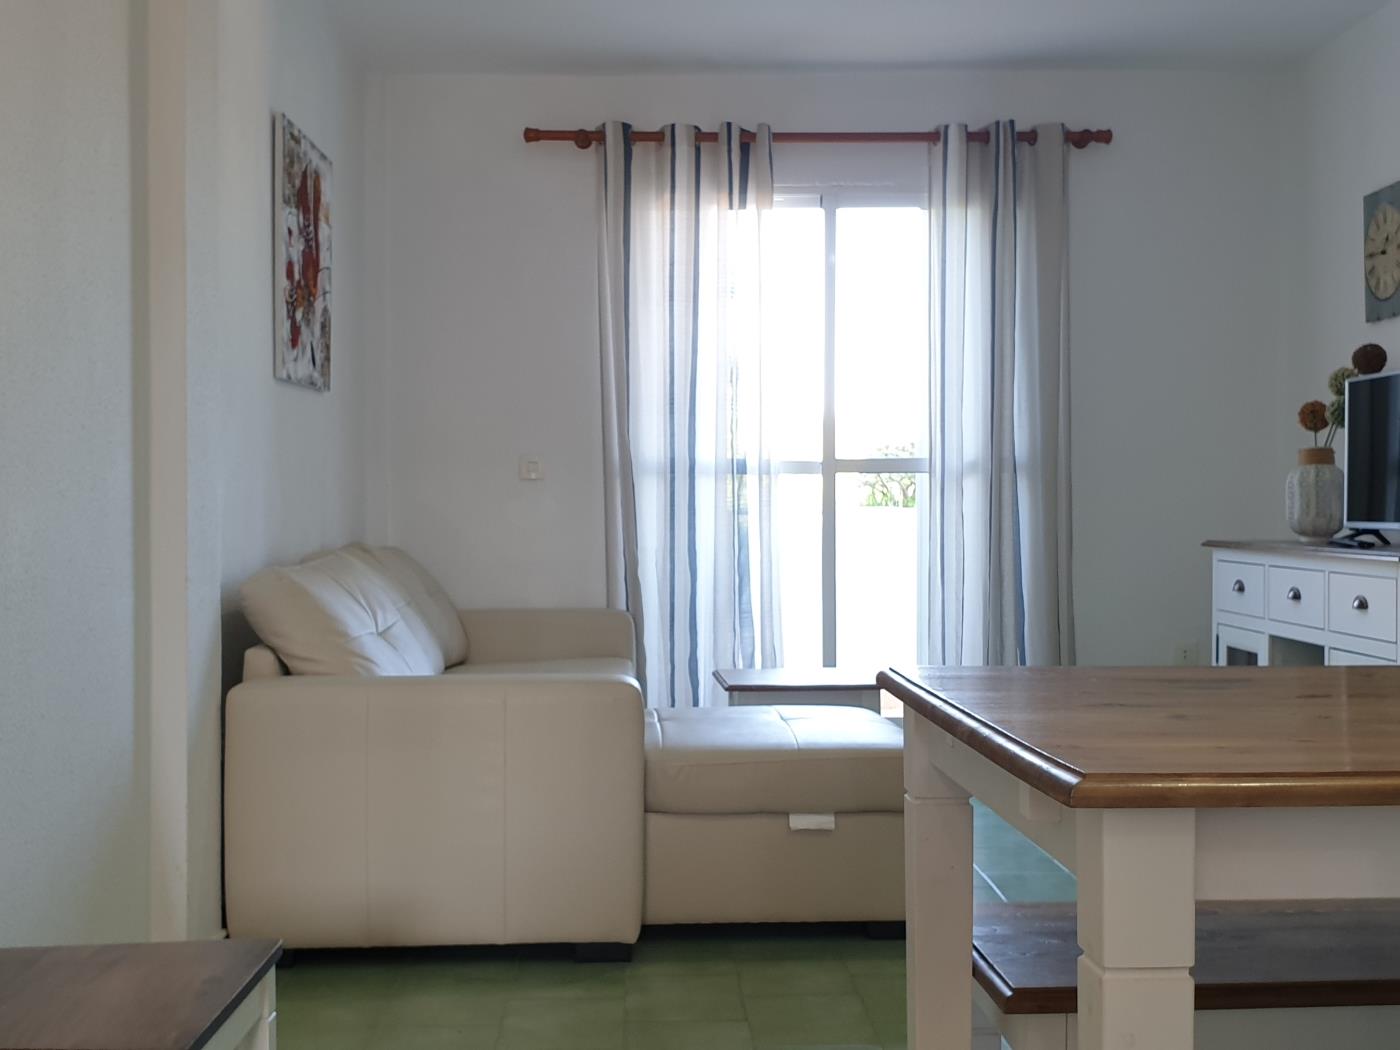 Ref 23V2E. Two-bedroom apartment on the second floor in Chiclana de la frontera (Cádiz)